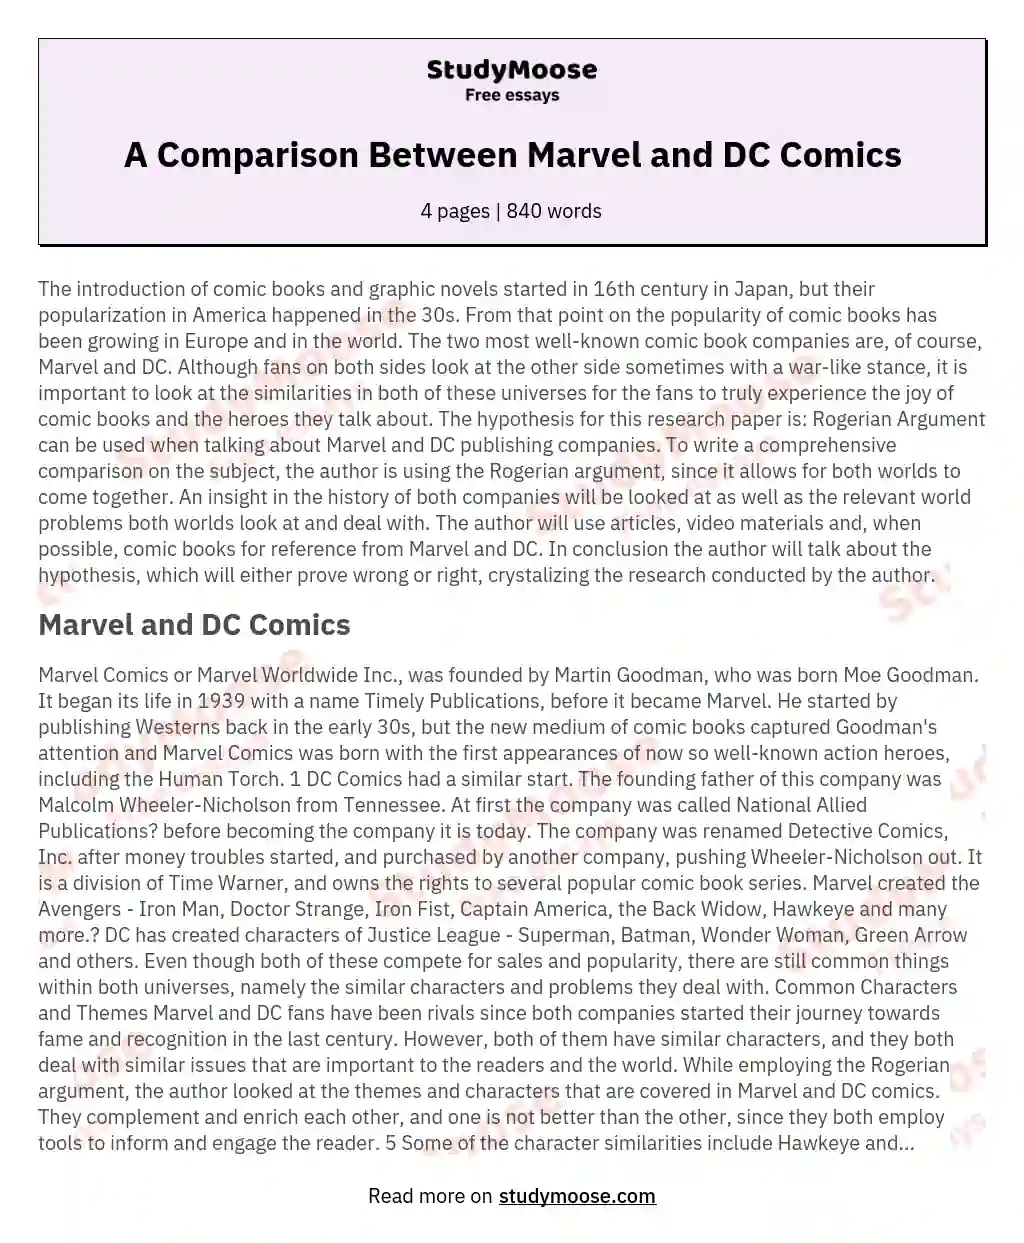 A Comparison Between Marvel and DC Comics essay